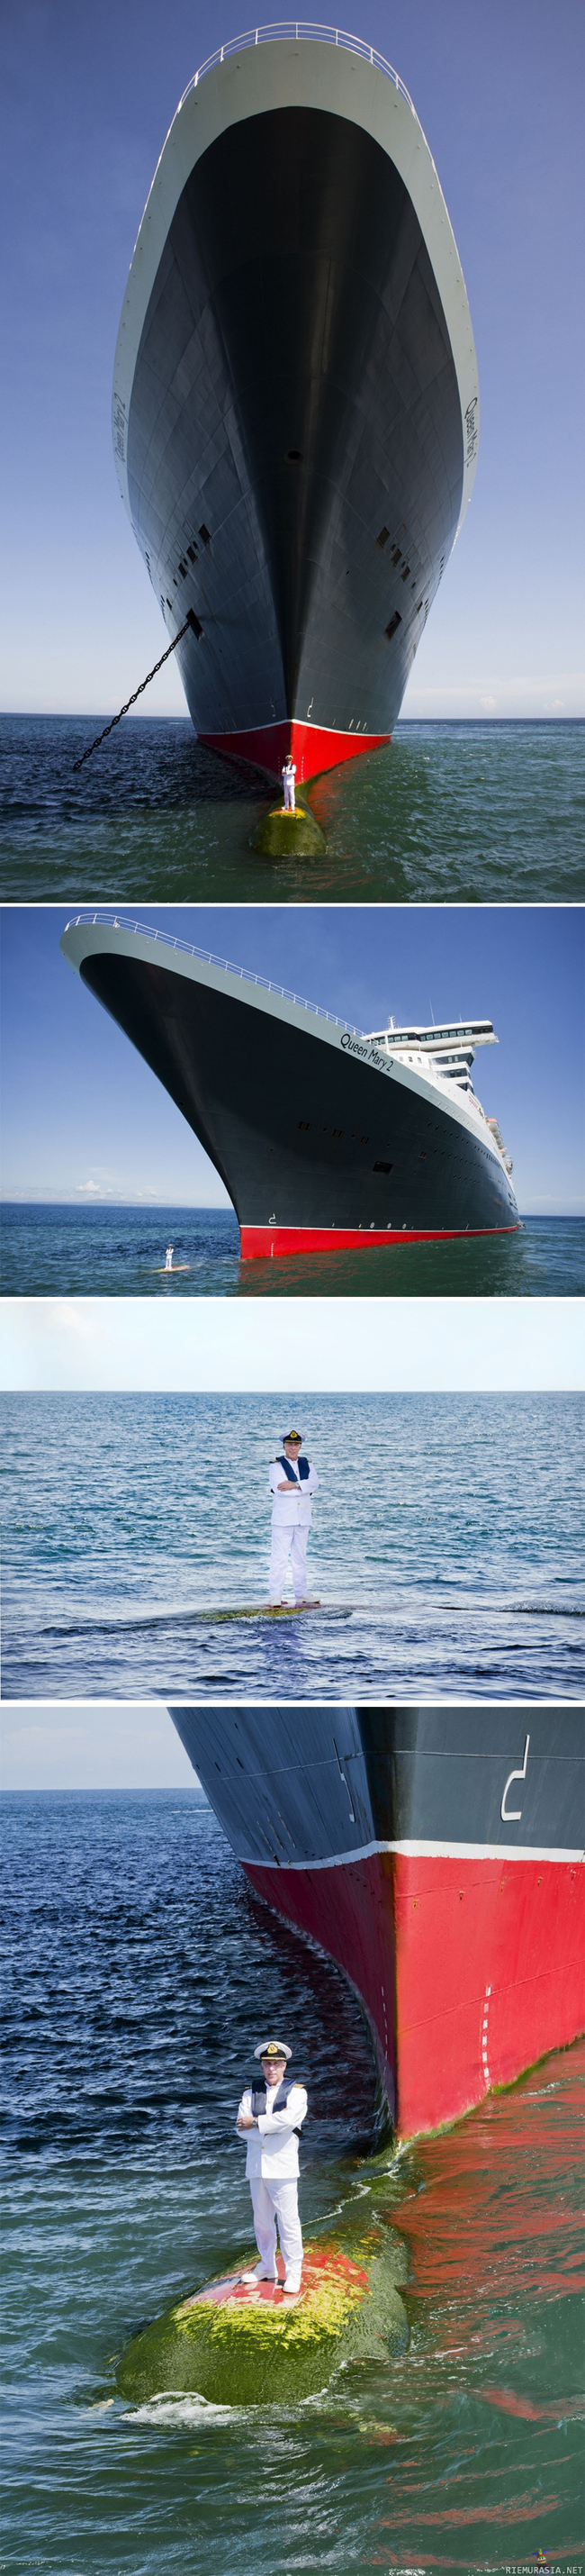 Kapteeni poseeraa - Luksusristeilijä Queen Mary II:n kapteeni Kevin Oprey poseeraa laivansa kanssa näyttävästi, koskahan nähdään Francesco Schettinon versio?